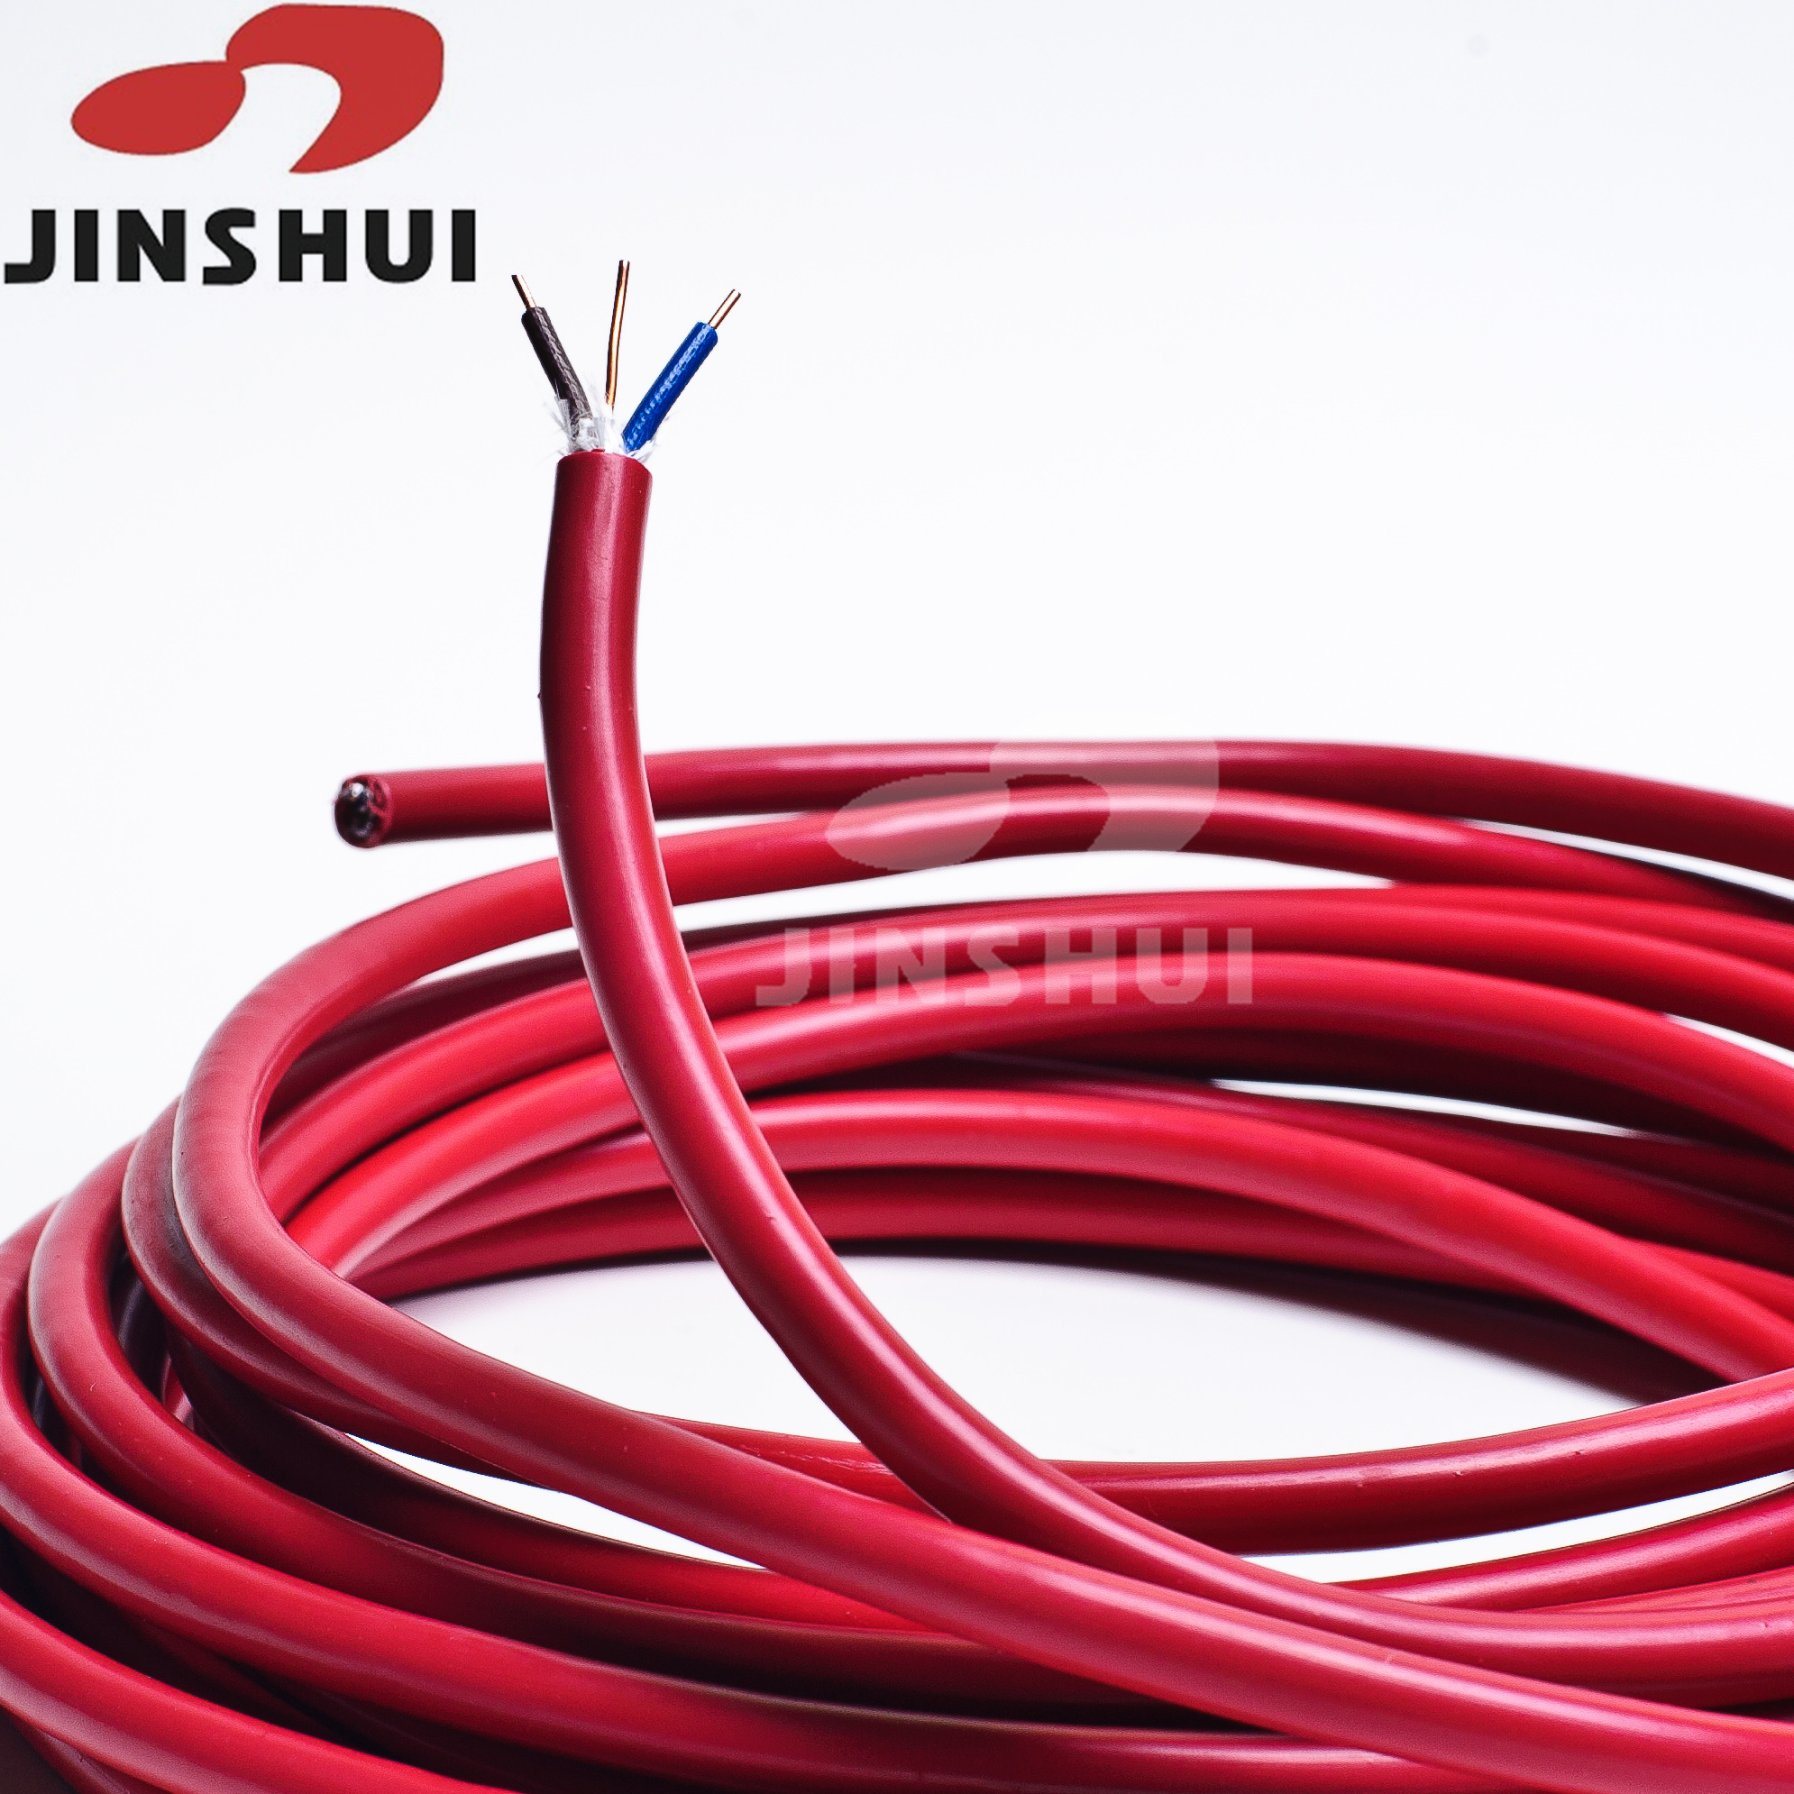 
                450/750V 3 Core de cobre núcleo PVC aislado cables para el hogar y. Cables
            